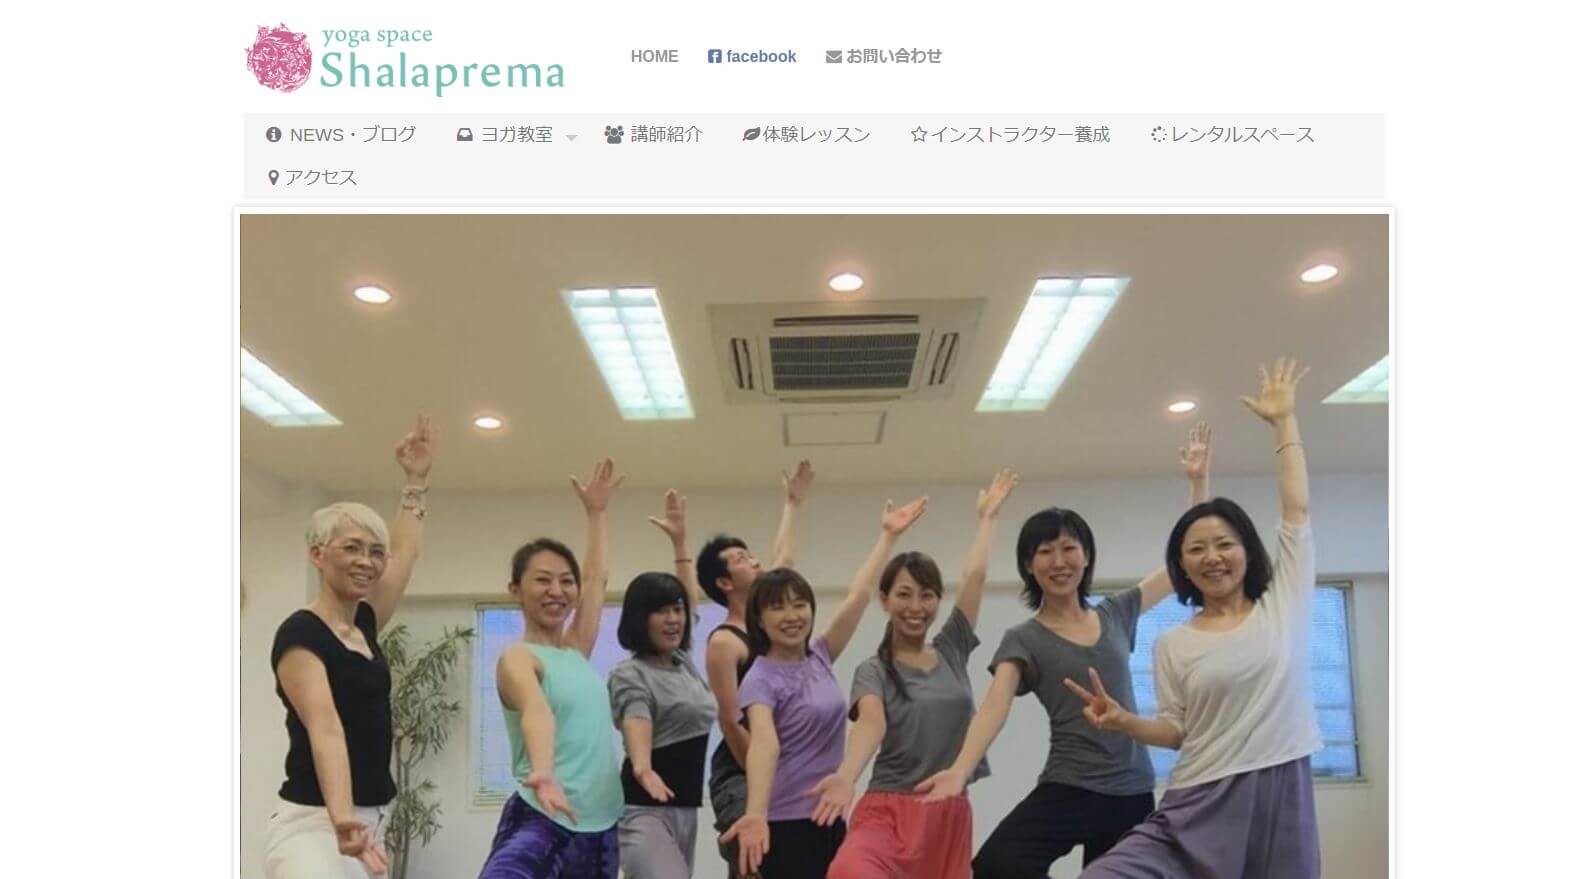 yoga space Shalaprema(シャラプレマ)